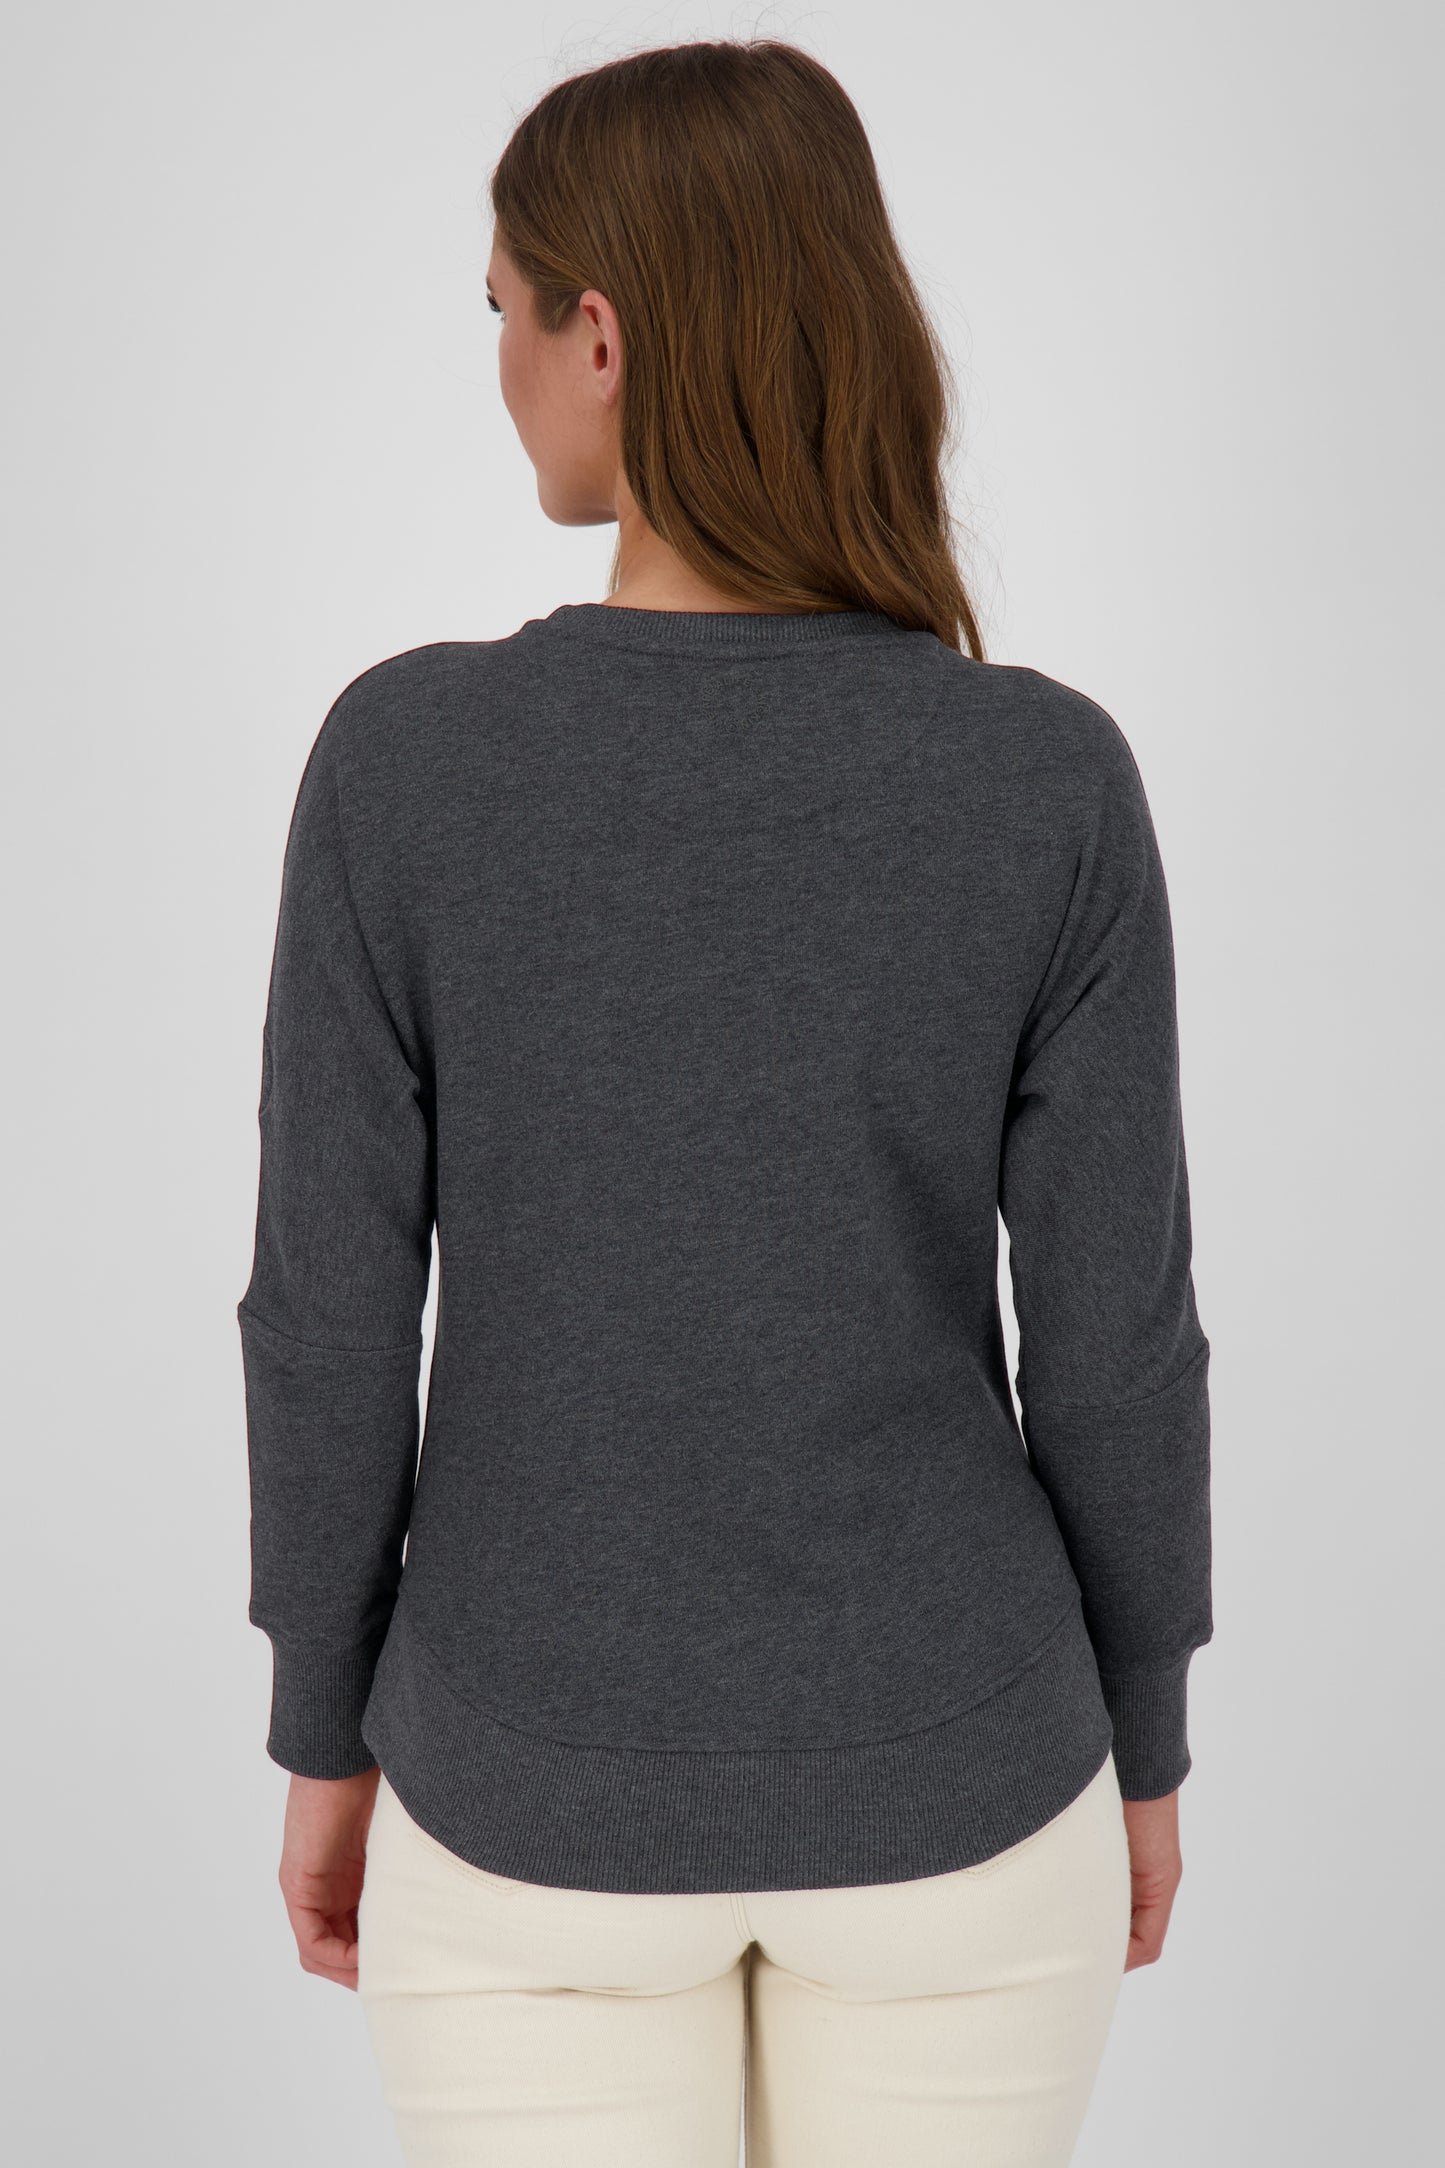 DalaAK A Damen Sweater-Lässig, farbenfroh, perfekt für den Alltag Schwarz